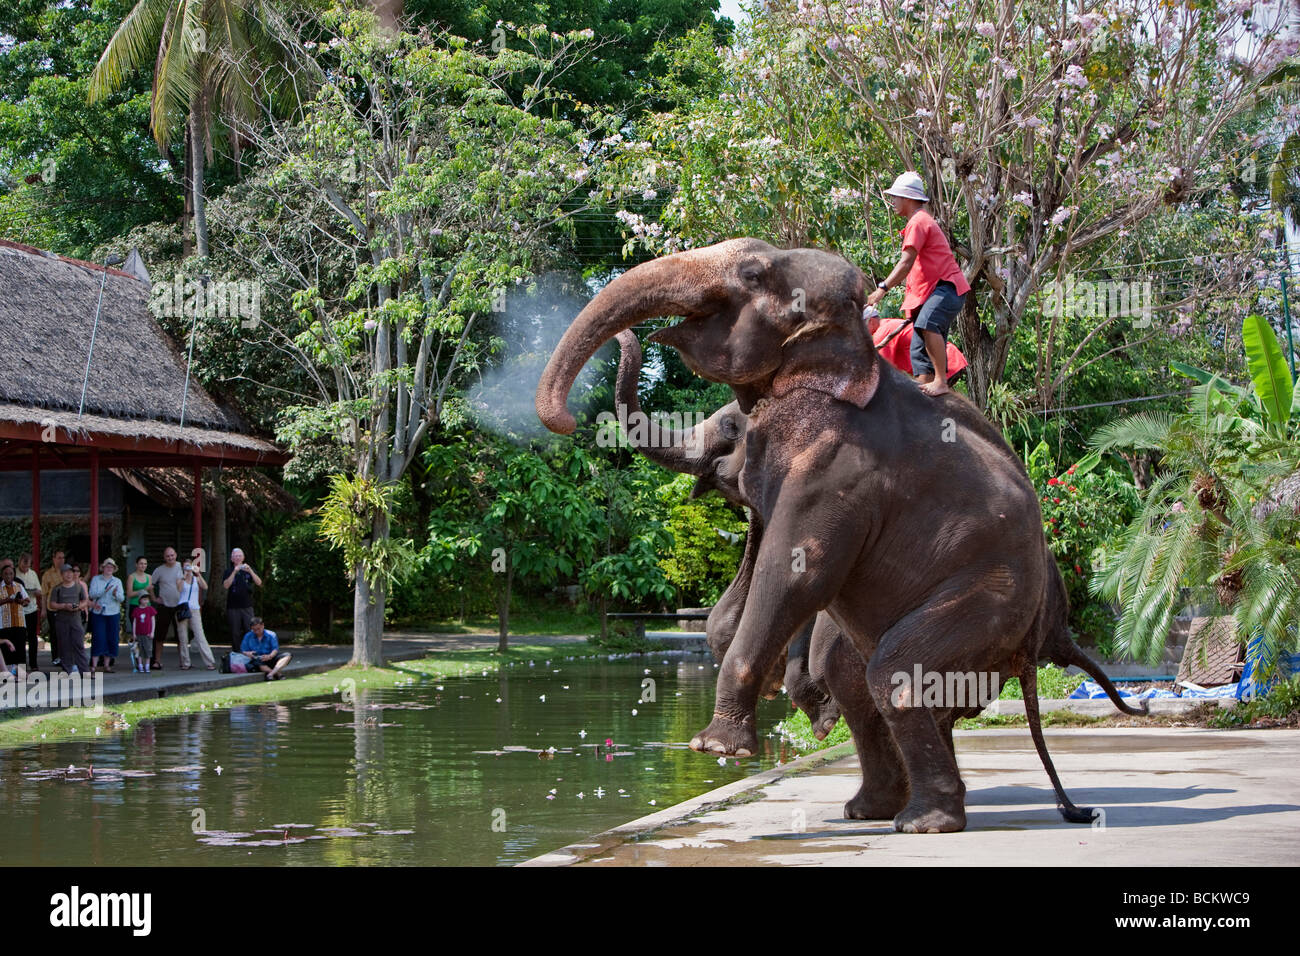 La Thaïlande. Un affichage à l'éléphant Rose Garden un complexe touristique situé dans 75 acres de jardins magnifiques Banque D'Images